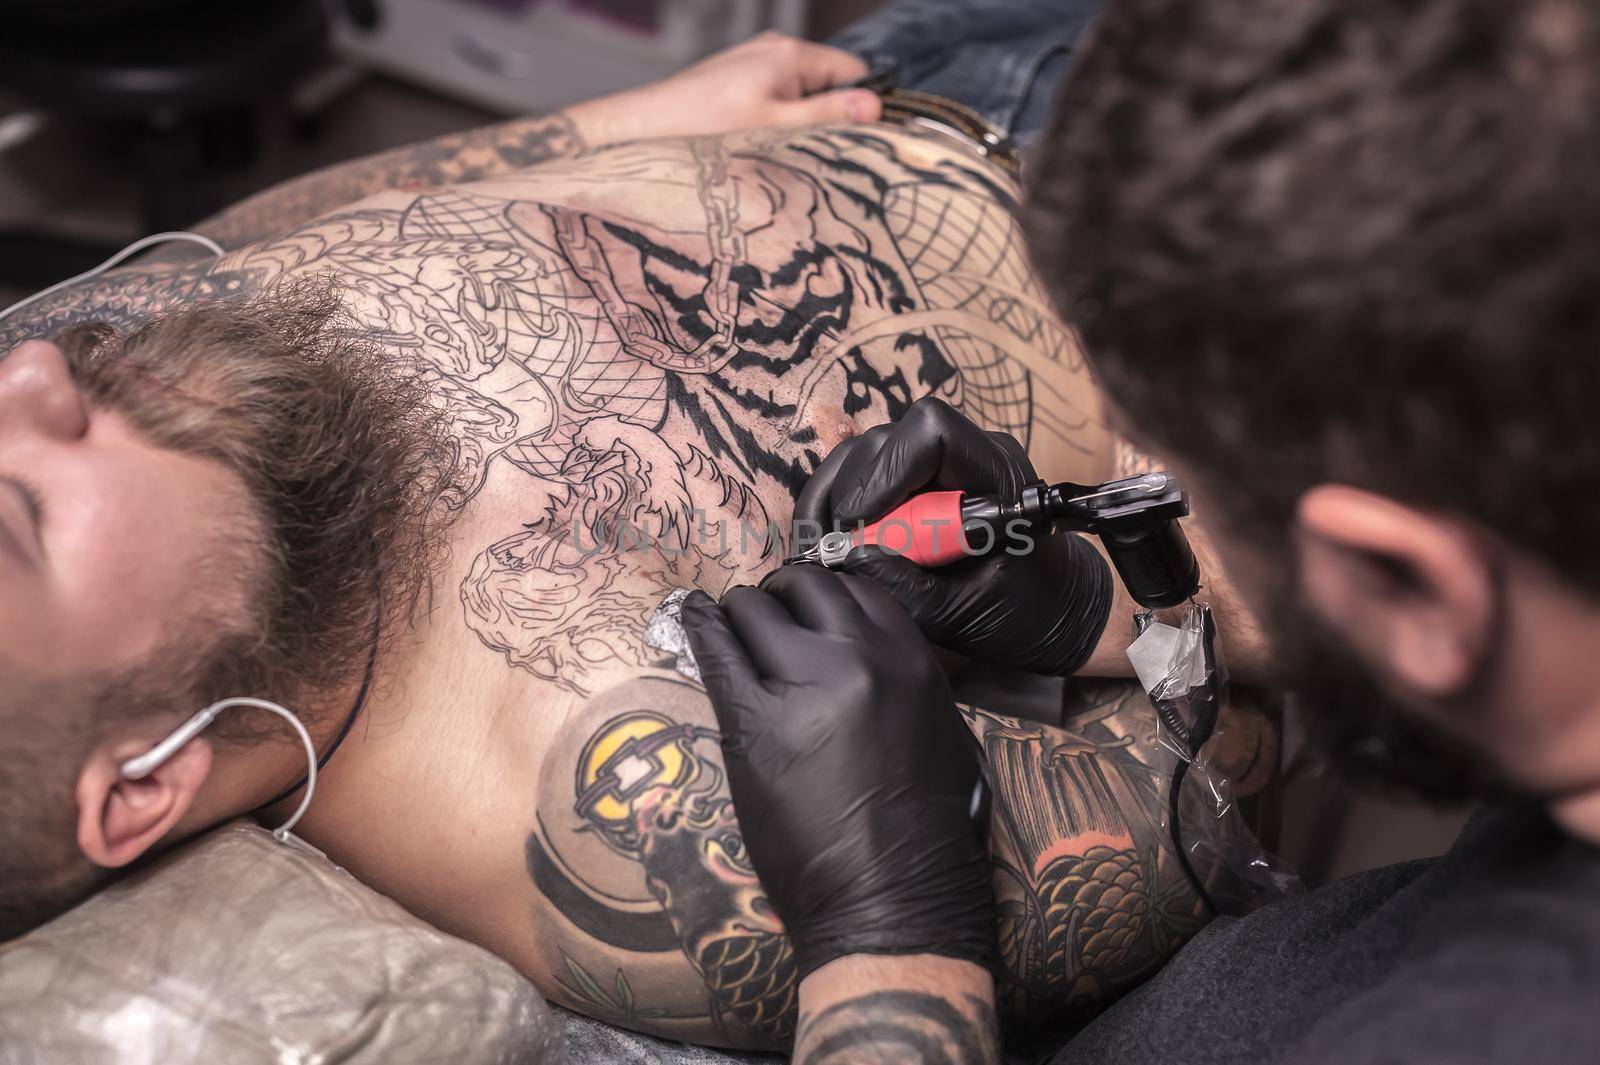 Master tattooist doing tattoo in tattoo parlor./Tattooer makes tattoo in tattoo studio.